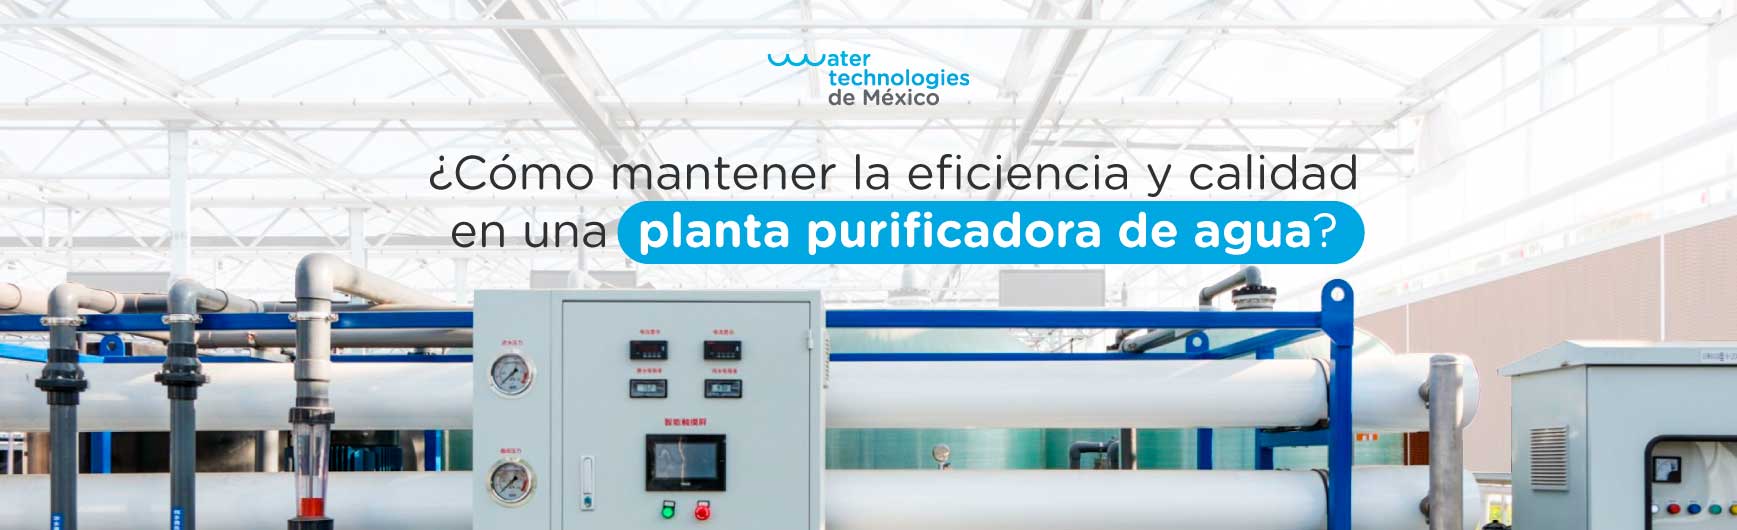 ¿Cómo mantener la eficiencia y calidad en una planta purificadora de agua?